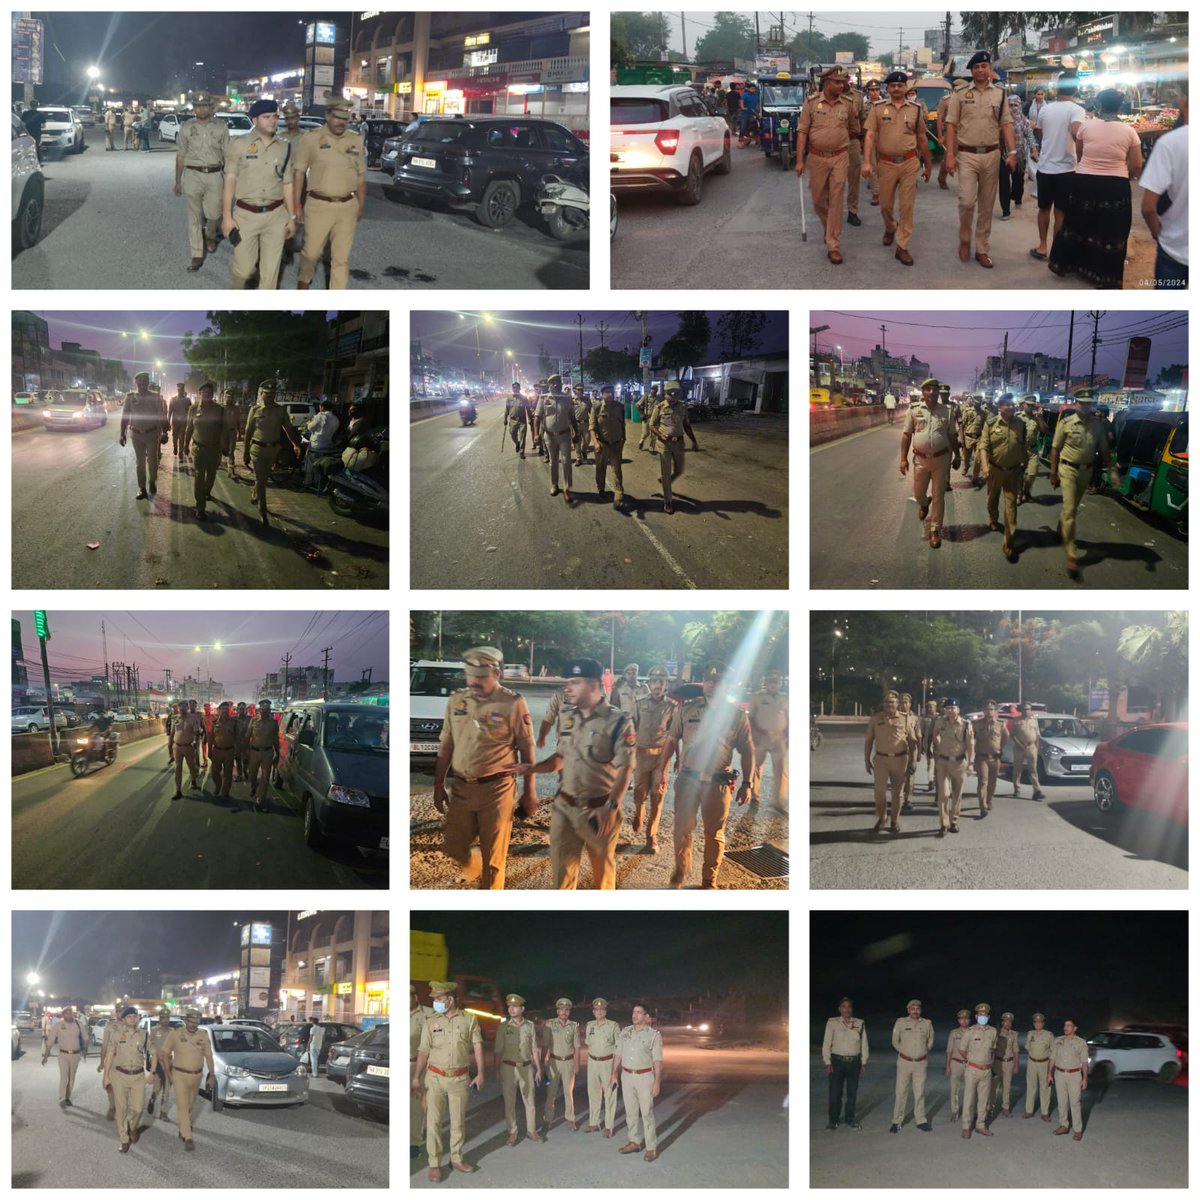 पुलिस कमिश्नरेट गौतमबुद्धनगर के सभी थाना क्षेत्रों में सुरक्षा व्यवस्था के दृष्टिगत पुलिस बल द्वारा पेट्रोलिंग कर चेकिंग की जा रही है !         

'आपकी सुरक्षा हमारी जिम्मेदारी' 
#NoidaPolice #हर_कदम_साथ